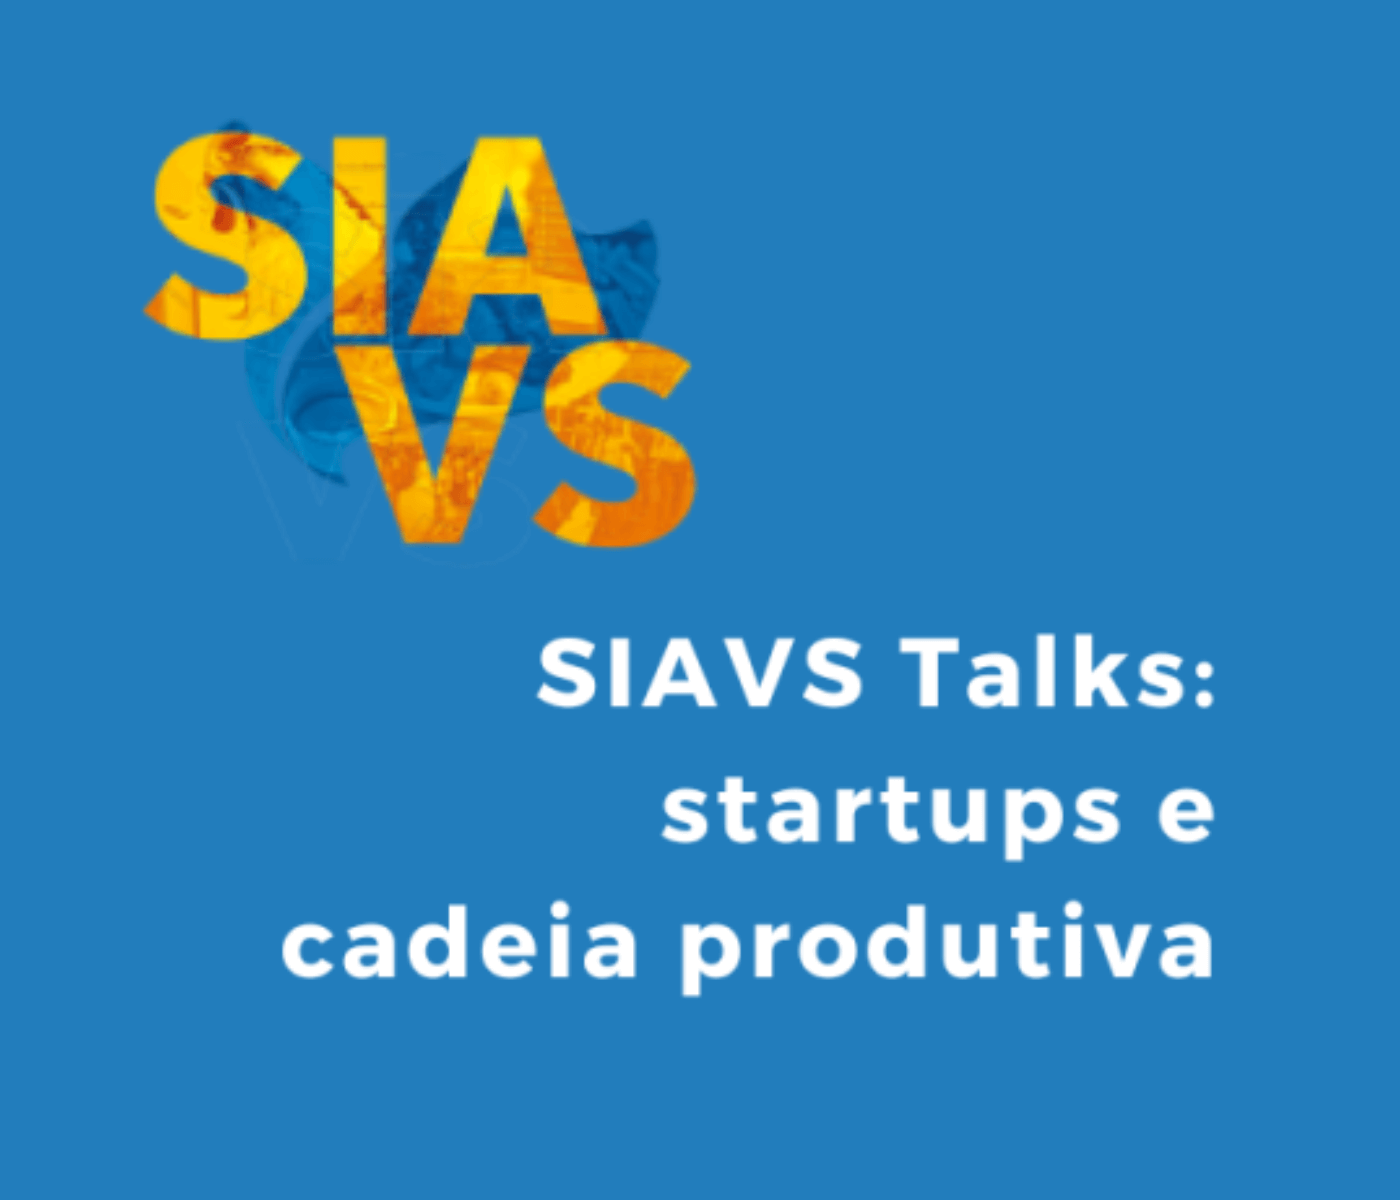 SIAVS Talks integra startups e a cadeia produtiva